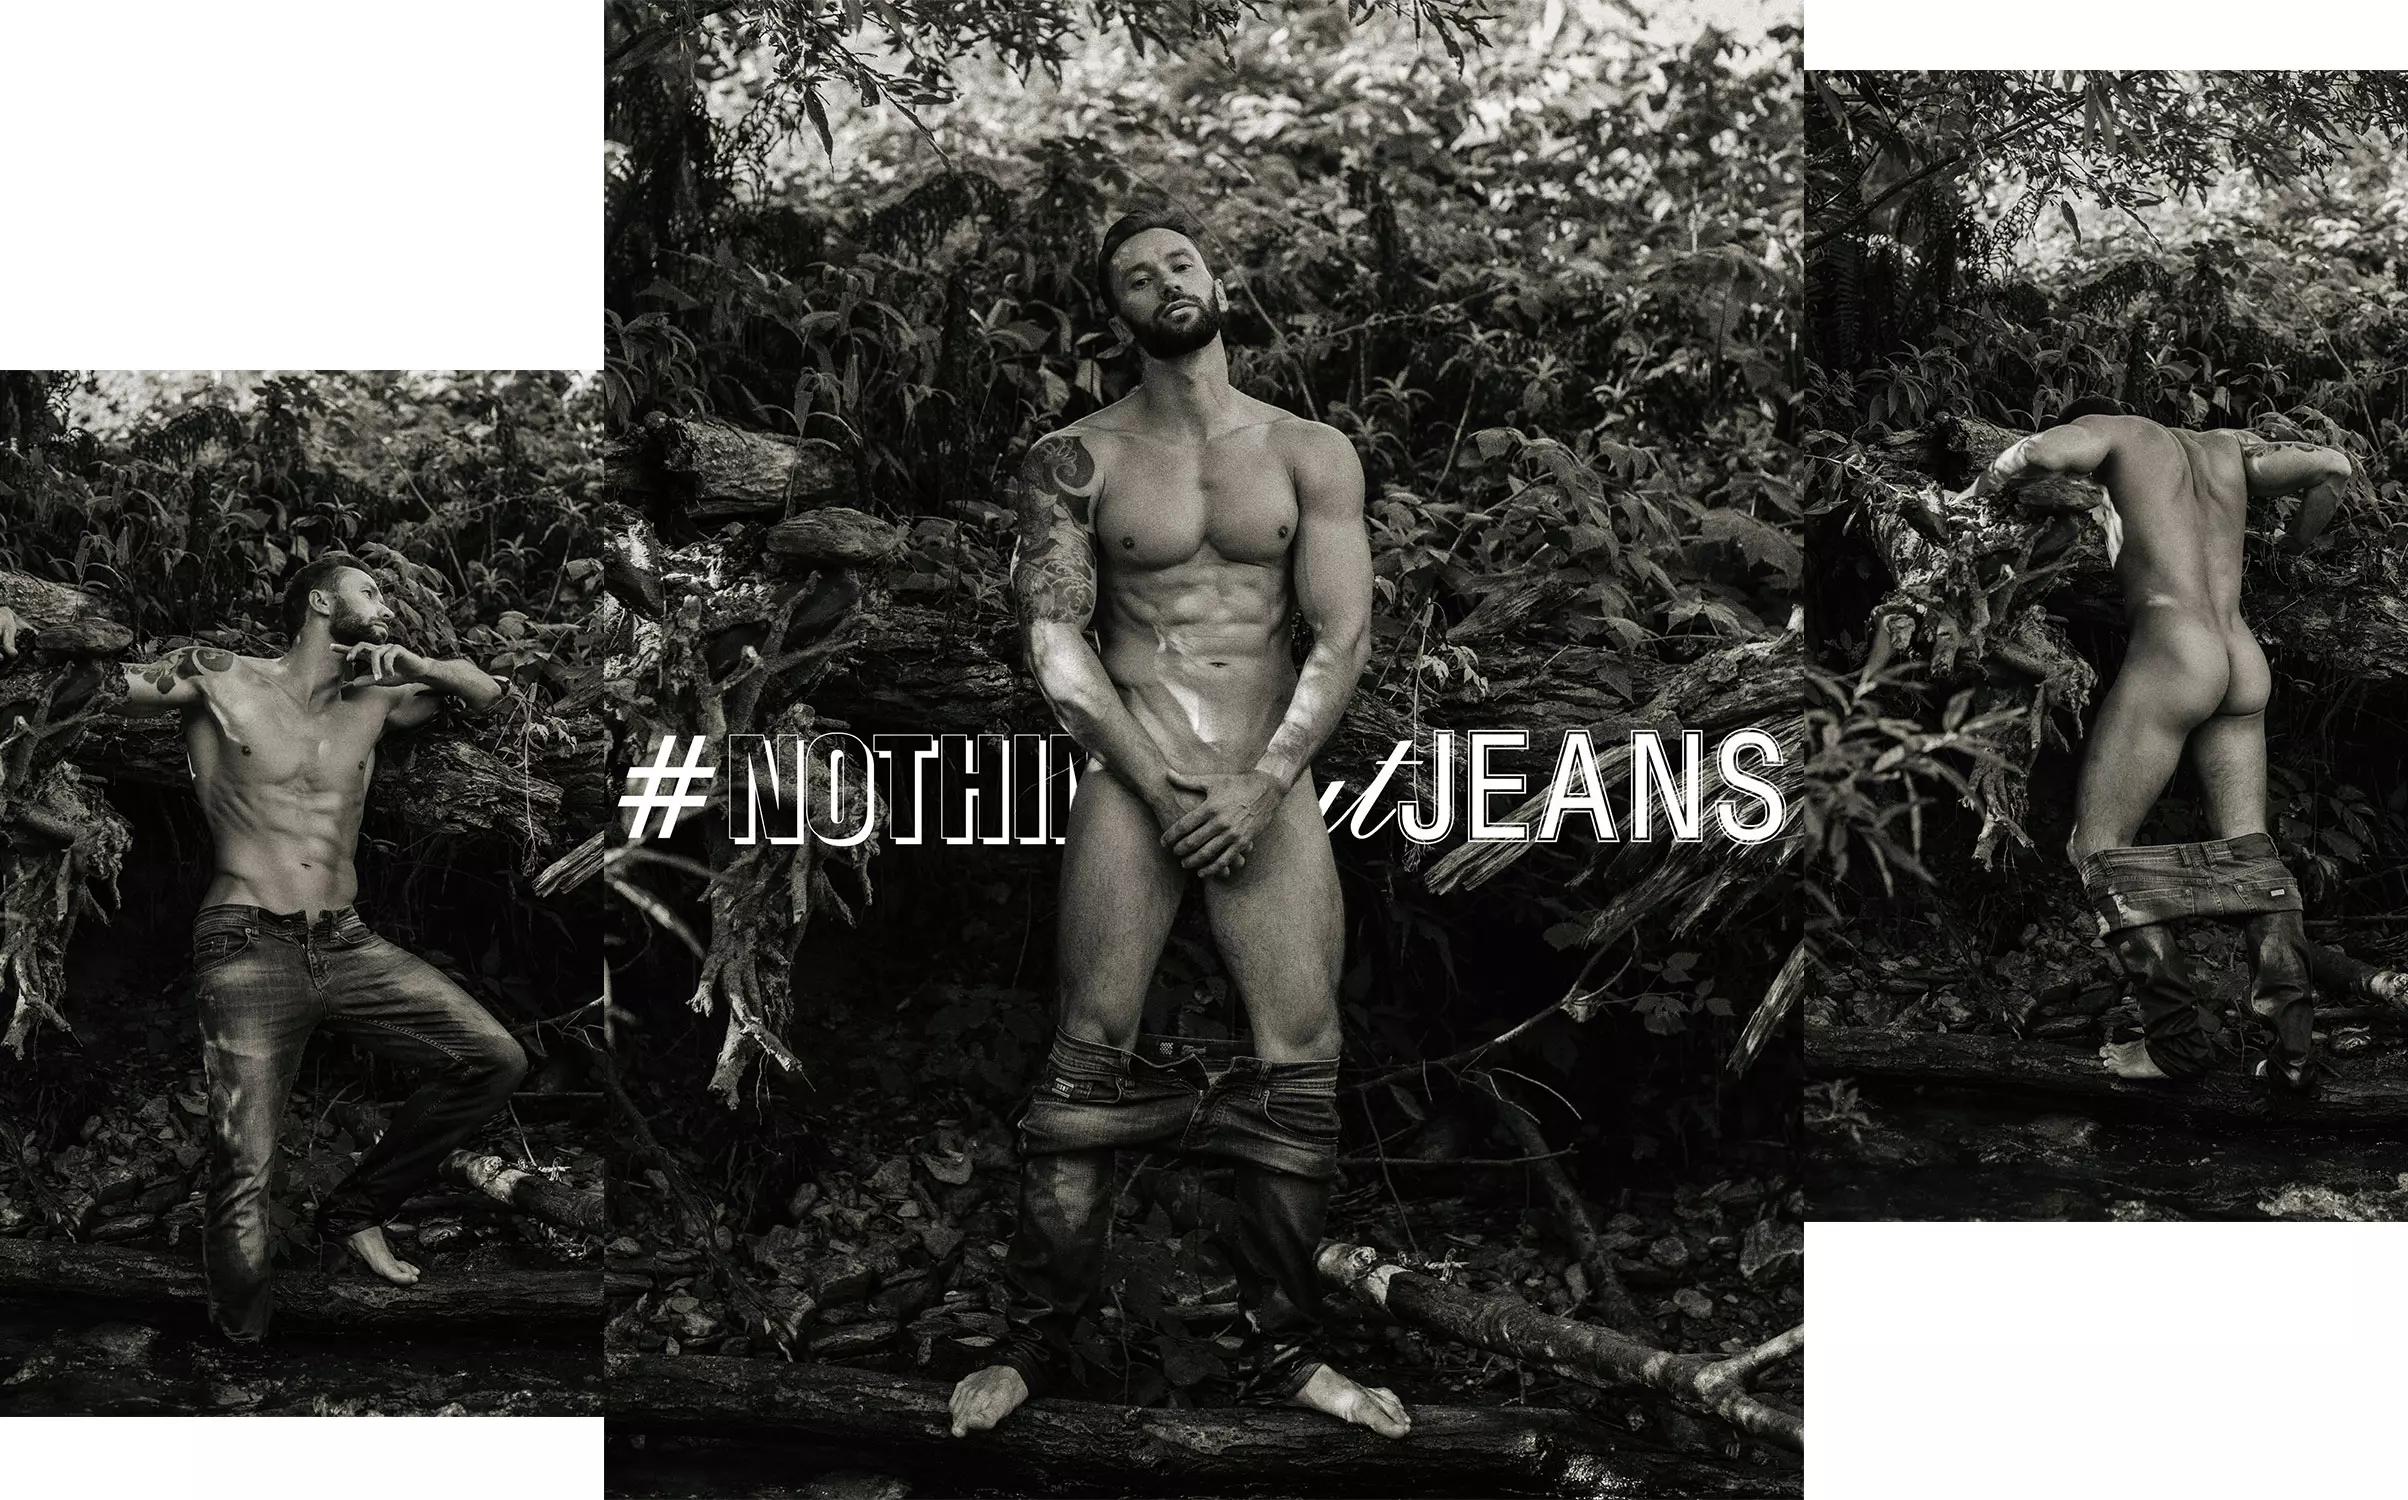 ਇਹ ਸਰਜ ਲੀ ਦੁਆਰਾ #NothingButJeans ਵਿੱਚ ਮਿਖਾਇਲ ਫੋਮਿਨ ਹੈ